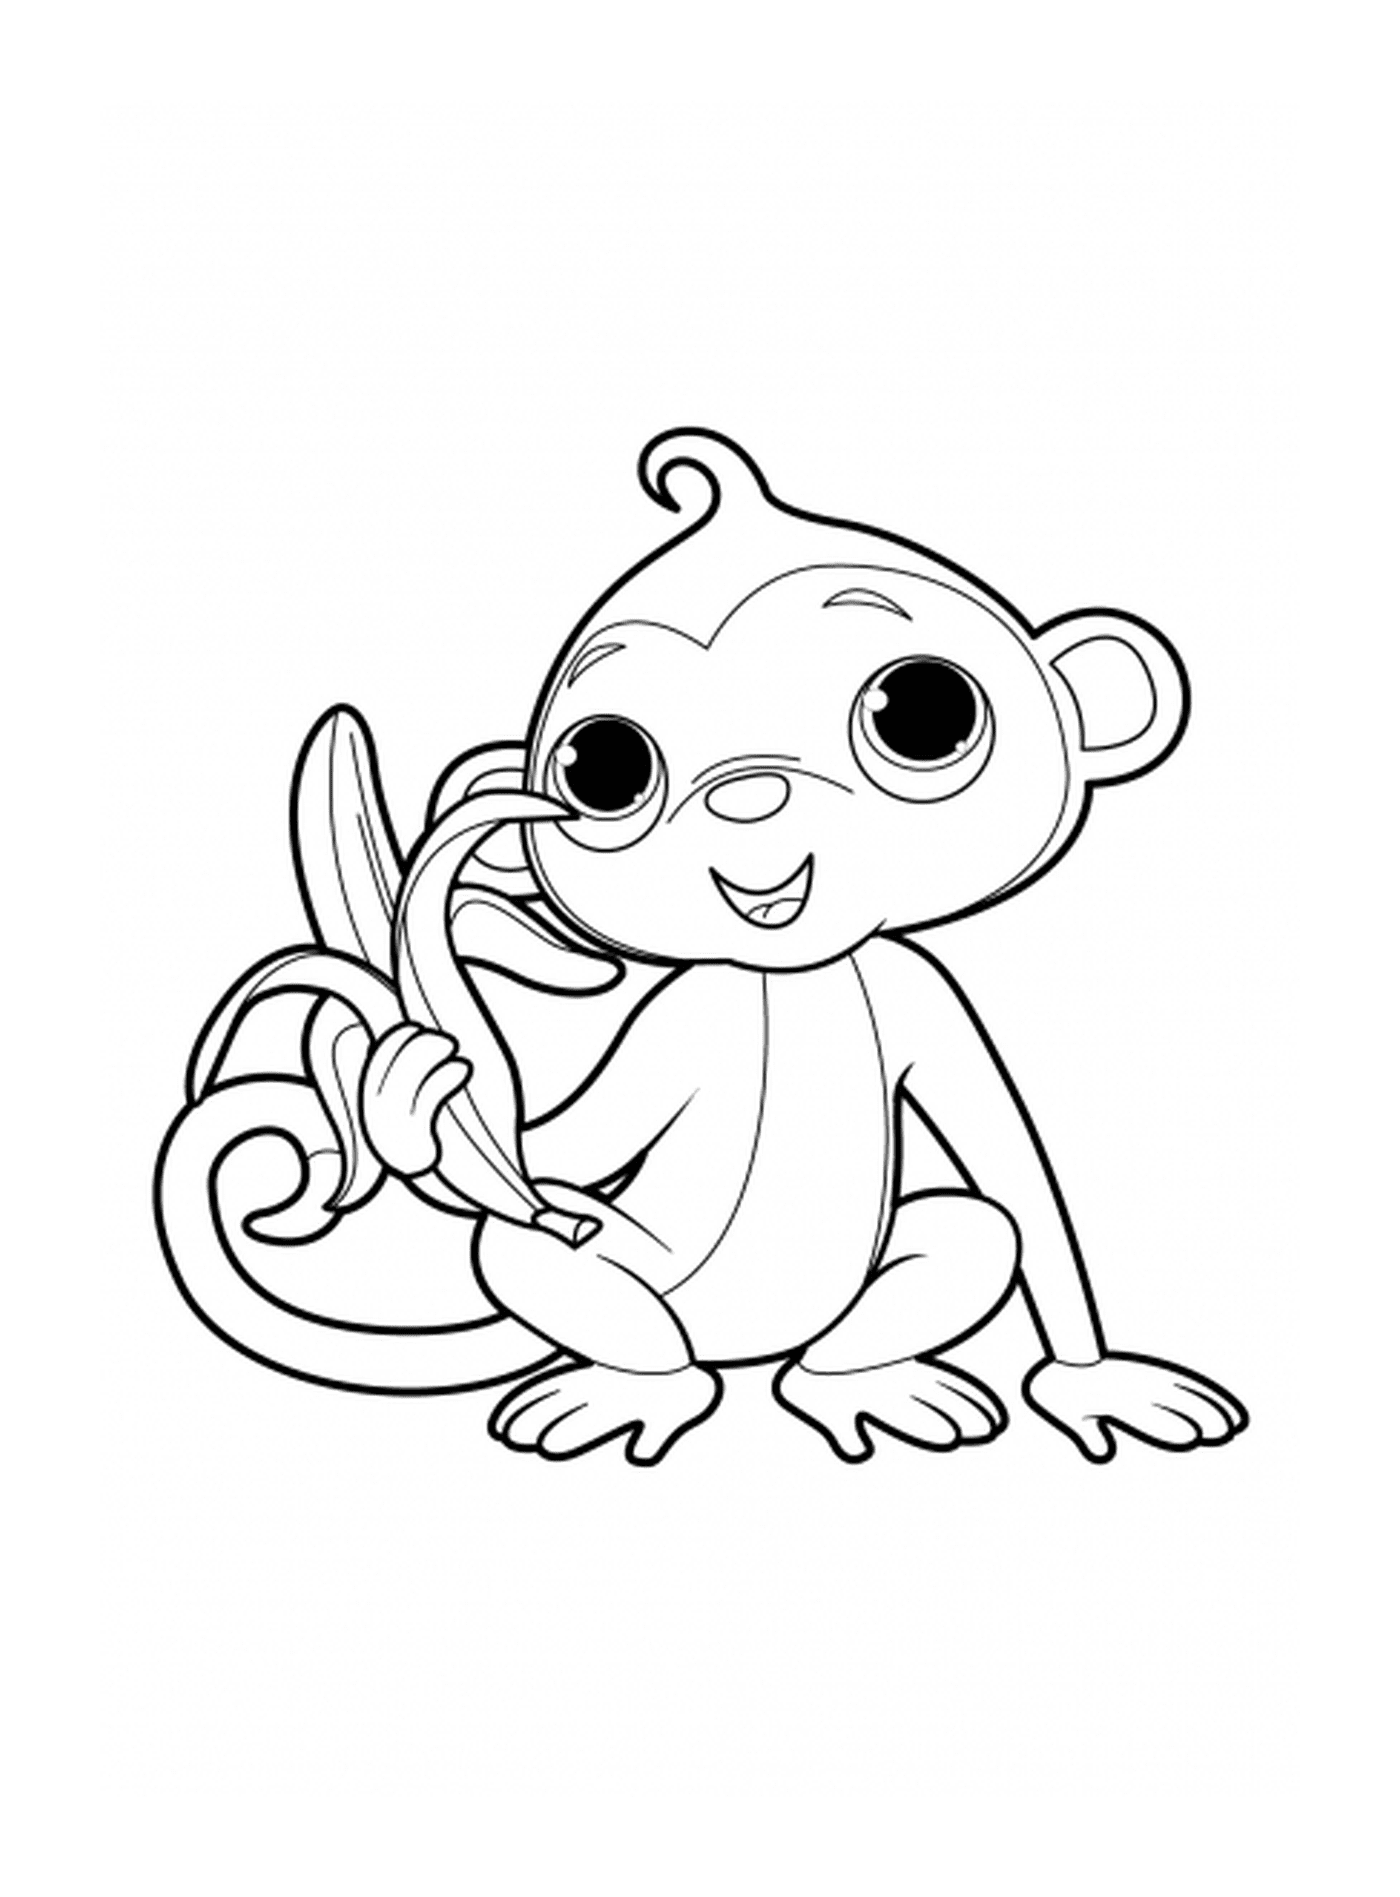  Macaco com uma deliciosa banana 